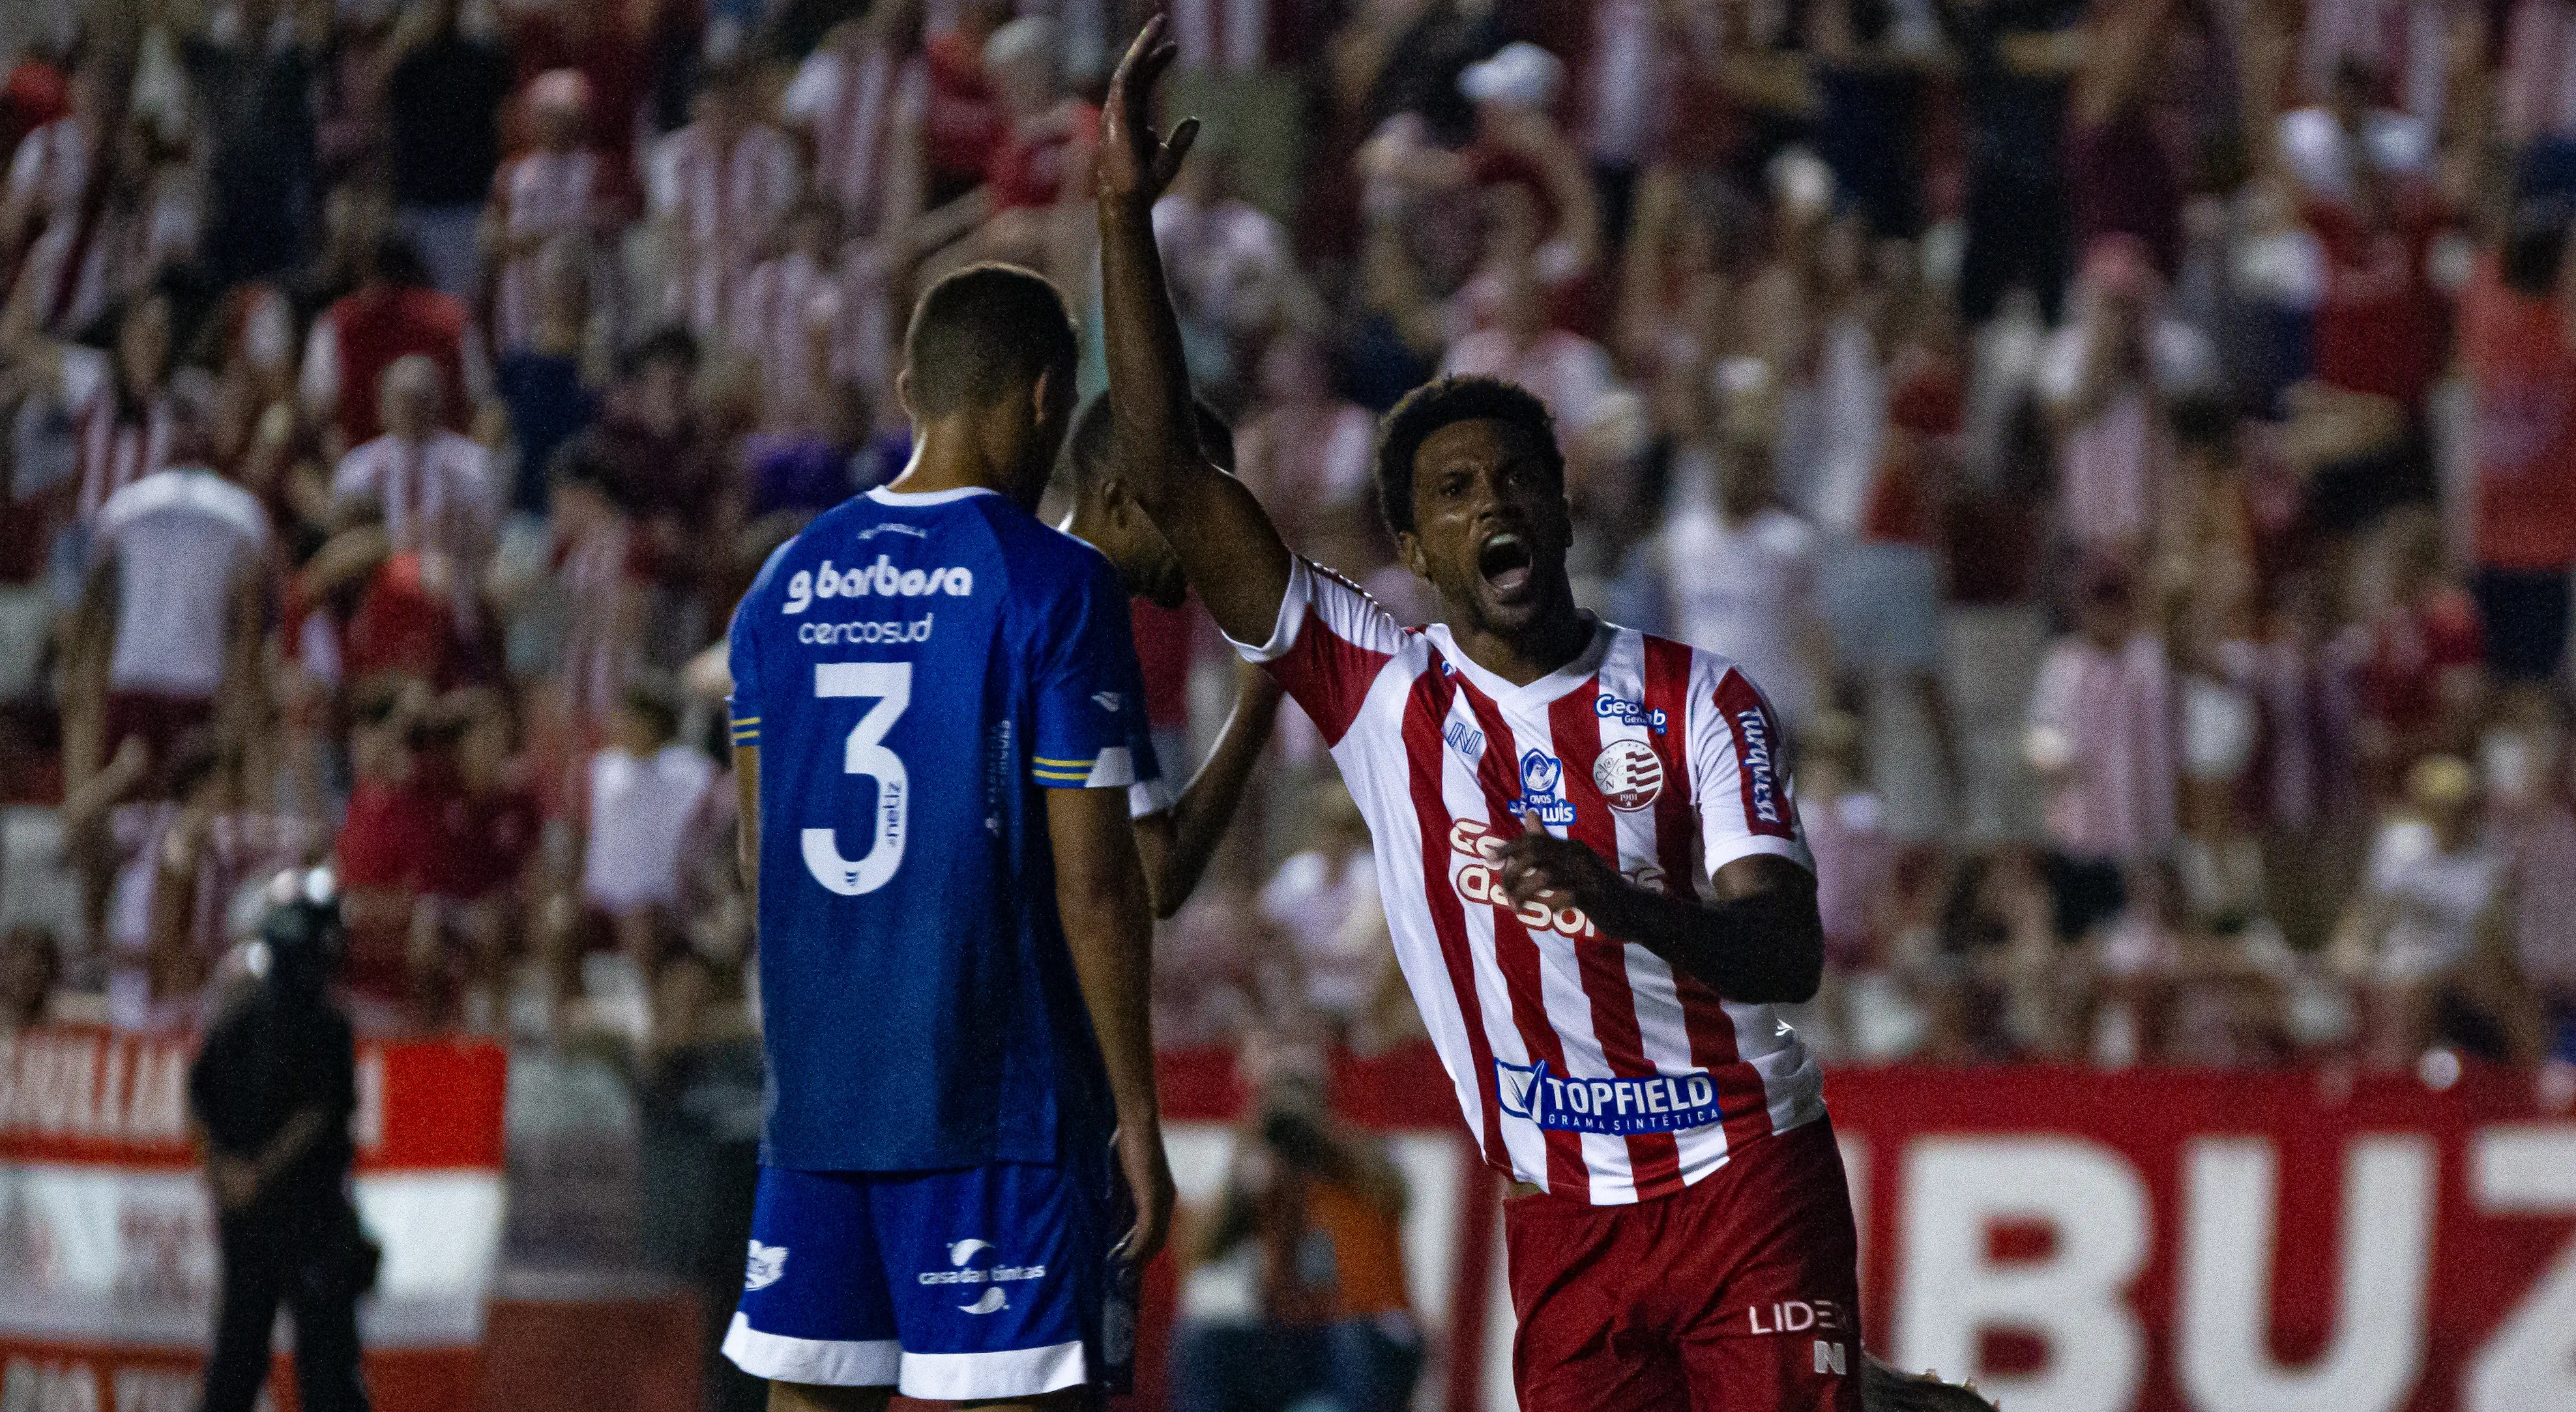 Imagem do atacante Bruno Mezenga comemorando um dos gols do Náutico sobre o Confiança